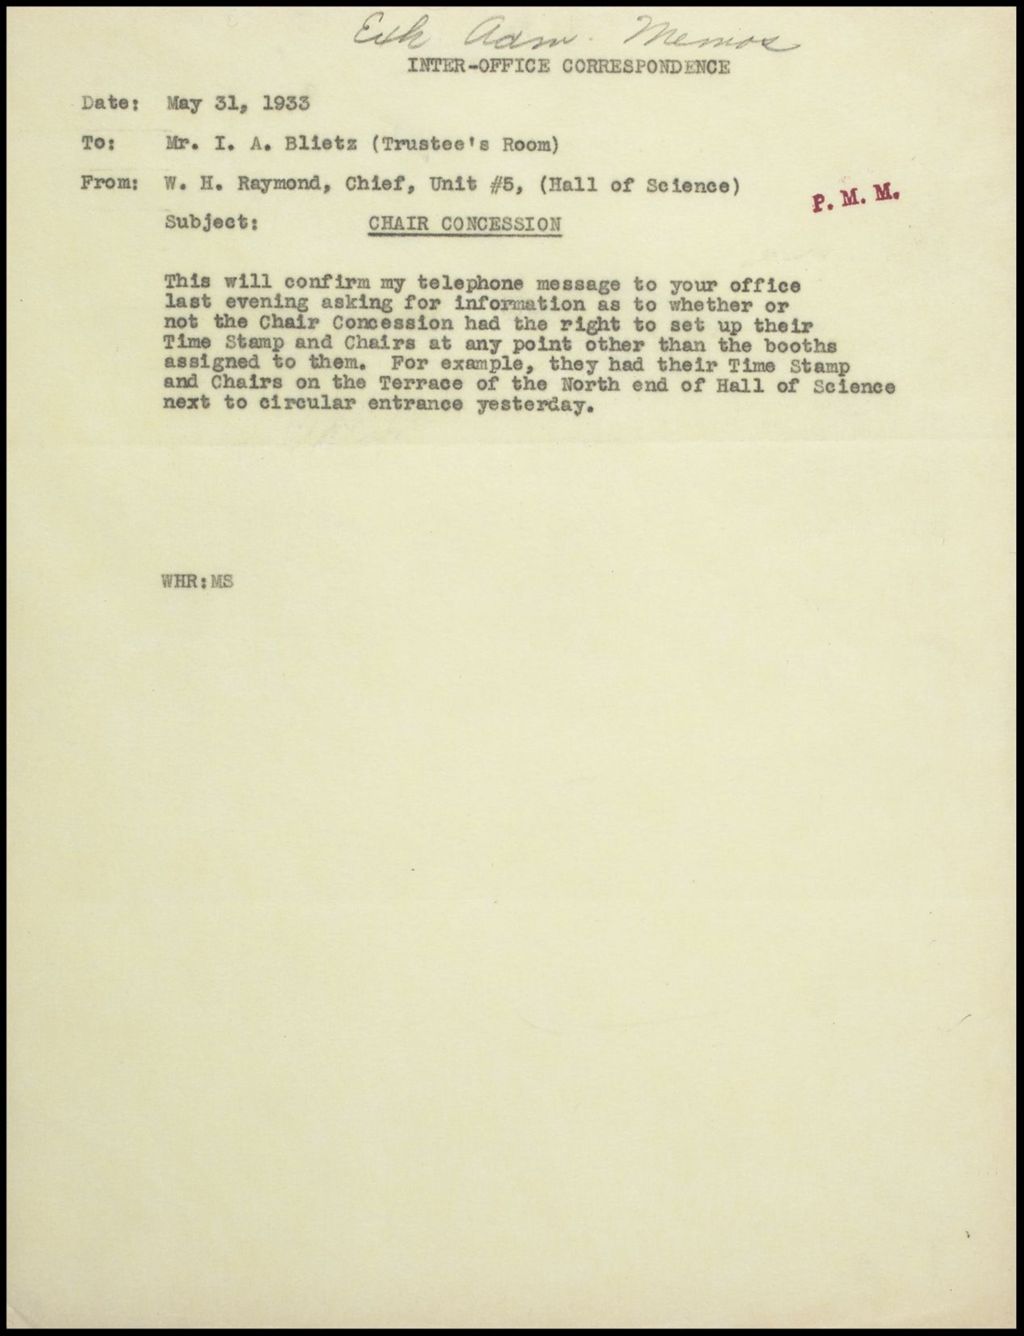 Exhibits, Memos, January - June 1933 (Folder 11-3)